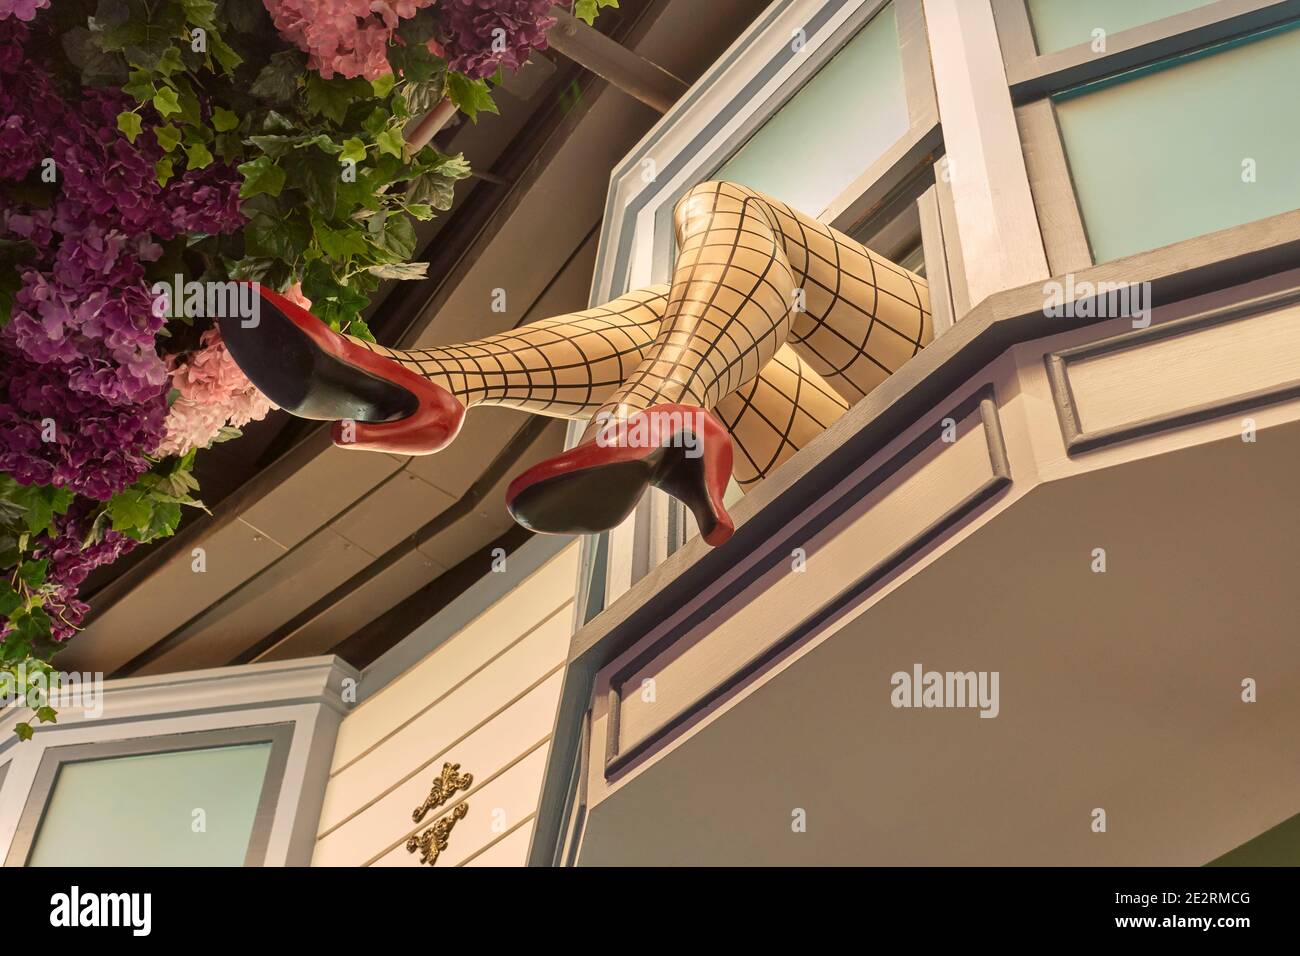 Gambe appese fuori finestra con calze a rete e scarpe a stiletto rosso che pubblicizzano un negozio di abbigliamento femminile. Thailandia Sud-est asiatico Foto Stock